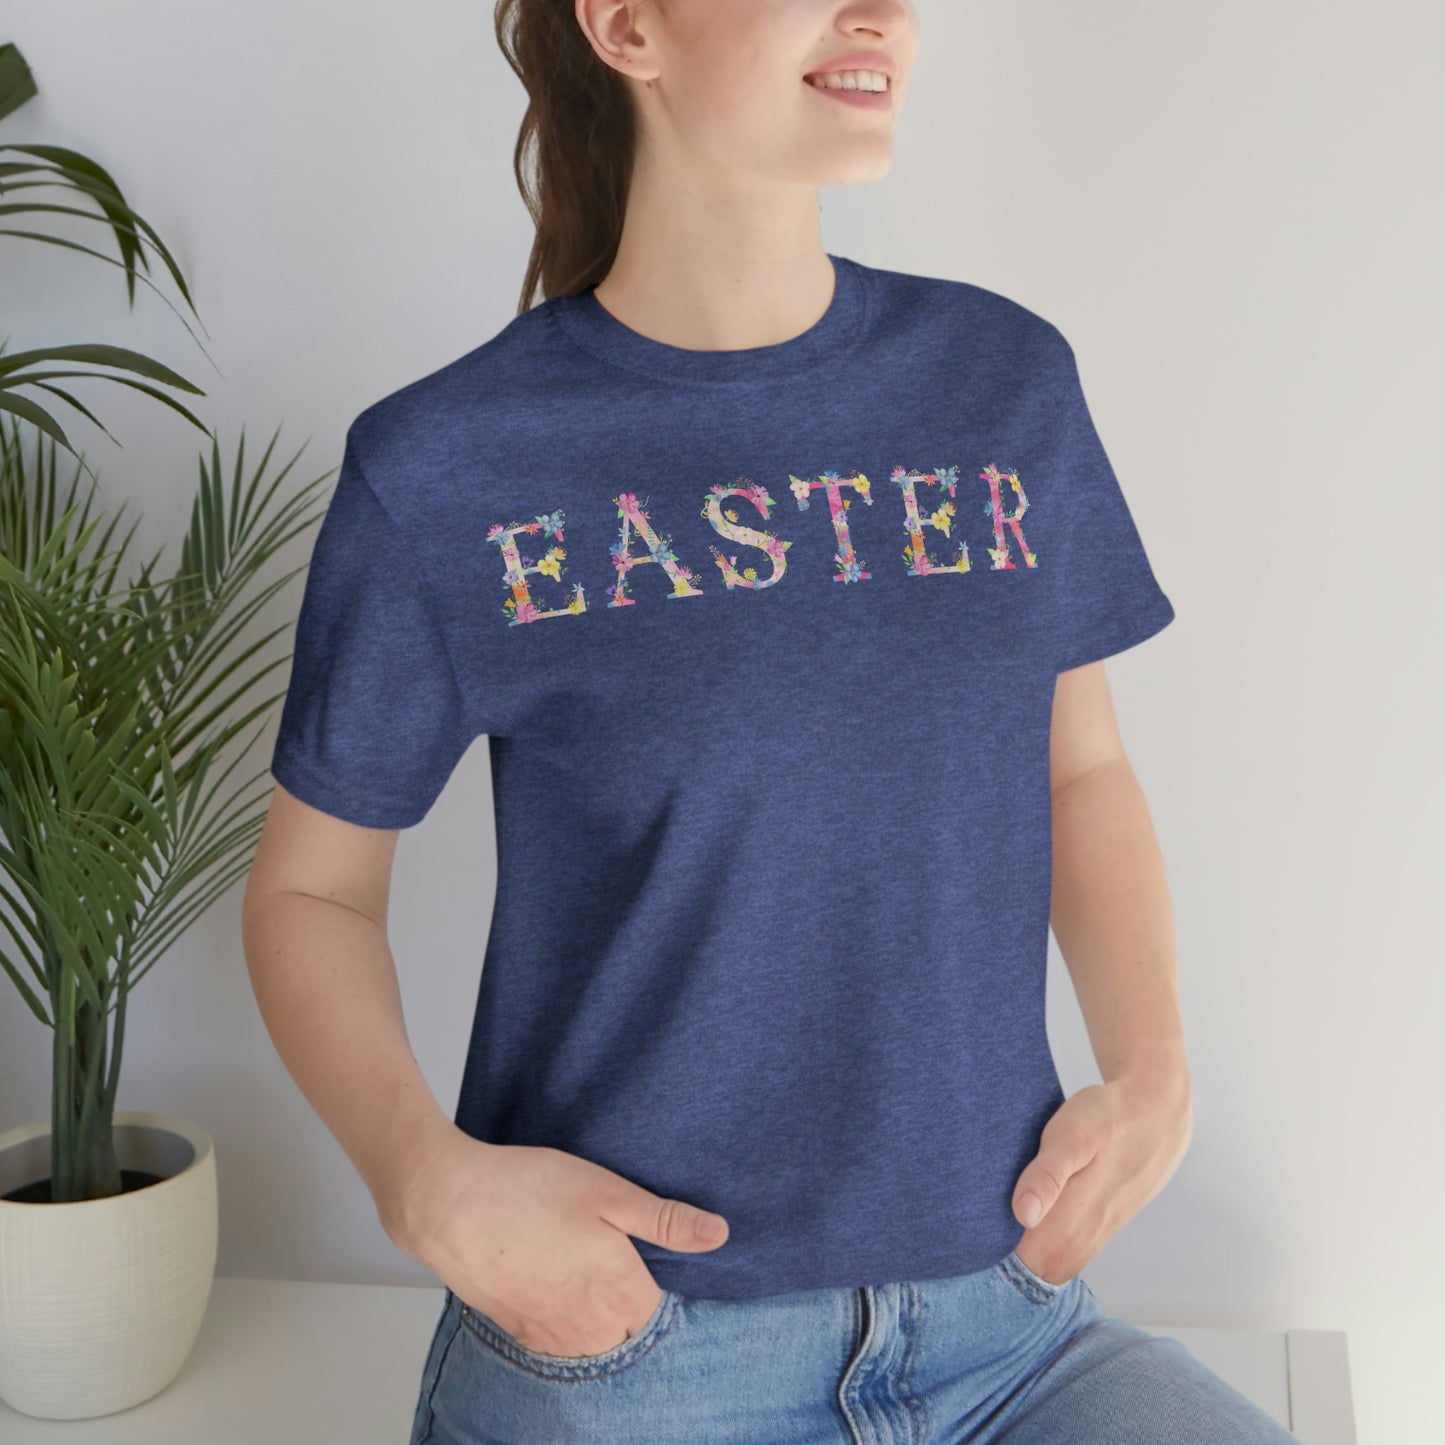 Easter Shirt - Easter Gift for women and Men